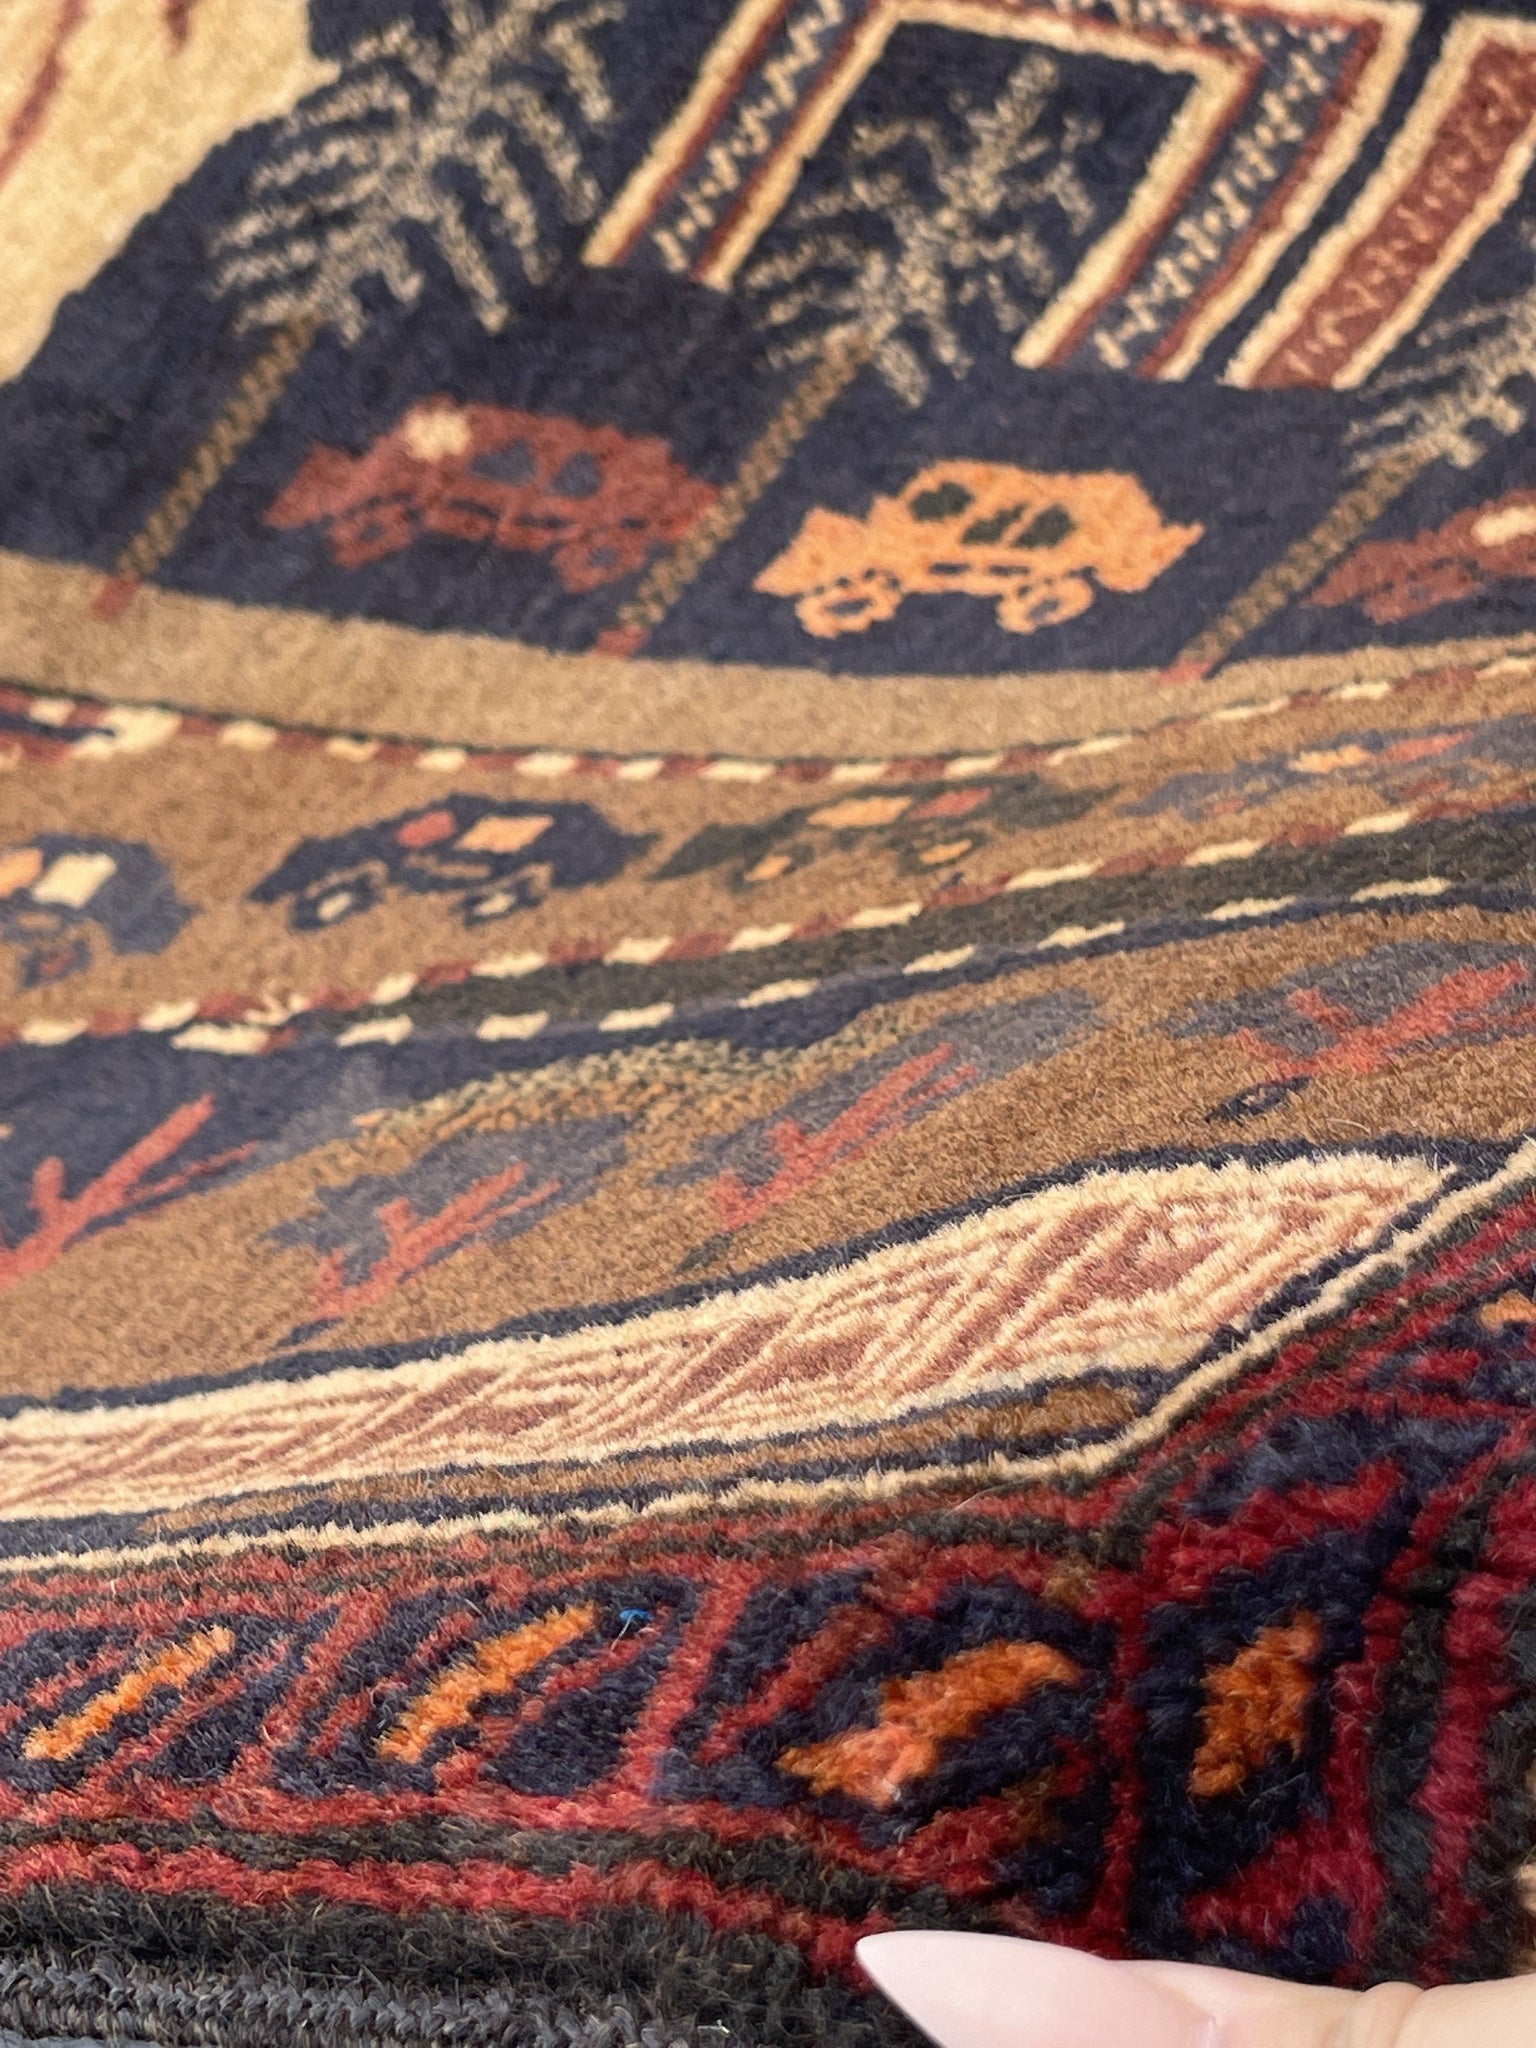 3x5 (90x150) Handmade Vintage Afghan Pictorial Rug | Indigo Tan Brown Red orange | Nomadic Baluch Boho Bohemian Tribal Turkish Moroccan Wool